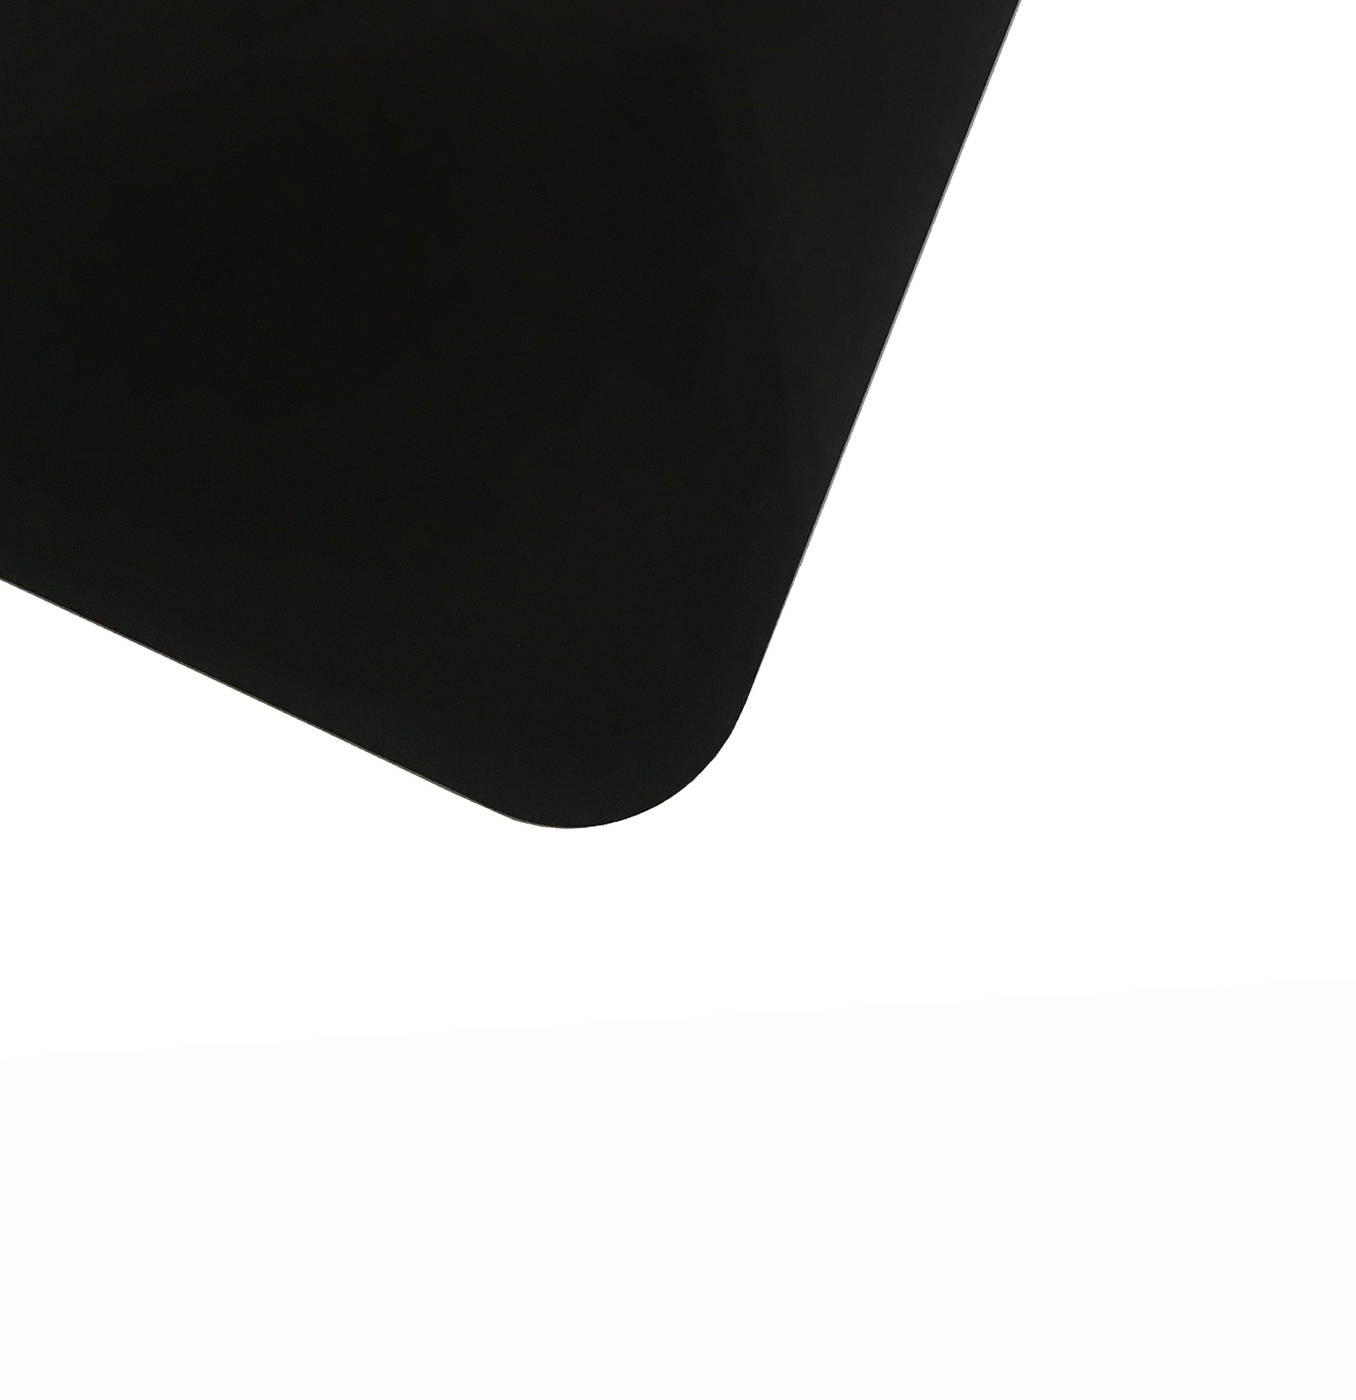 Планшет для пленэра из оргстекла 3 мм, под лист размера 40х60 см, цвет черный